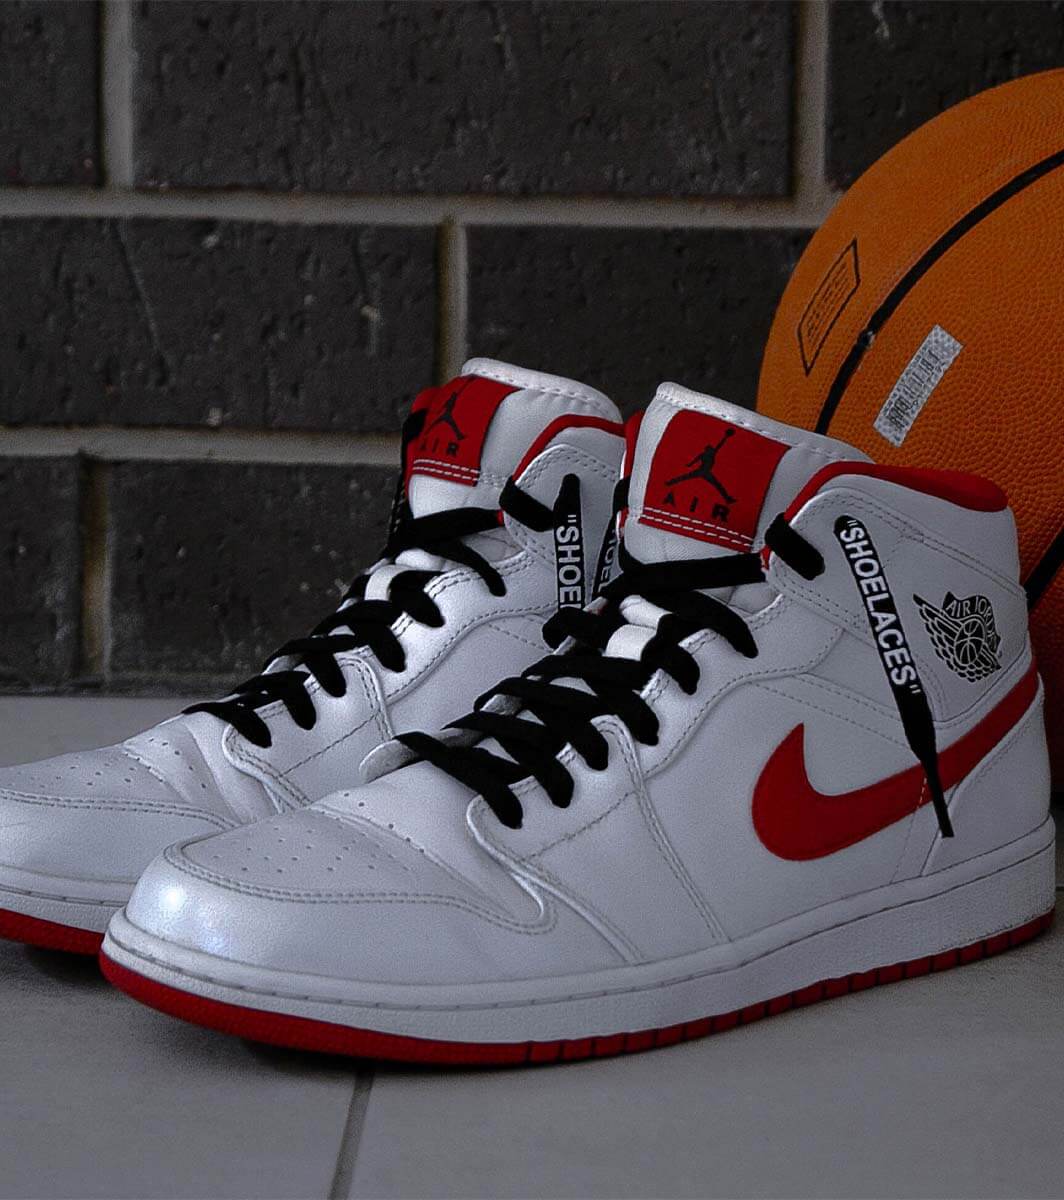 Nike Air Jordan sko: En kort historie om mærket